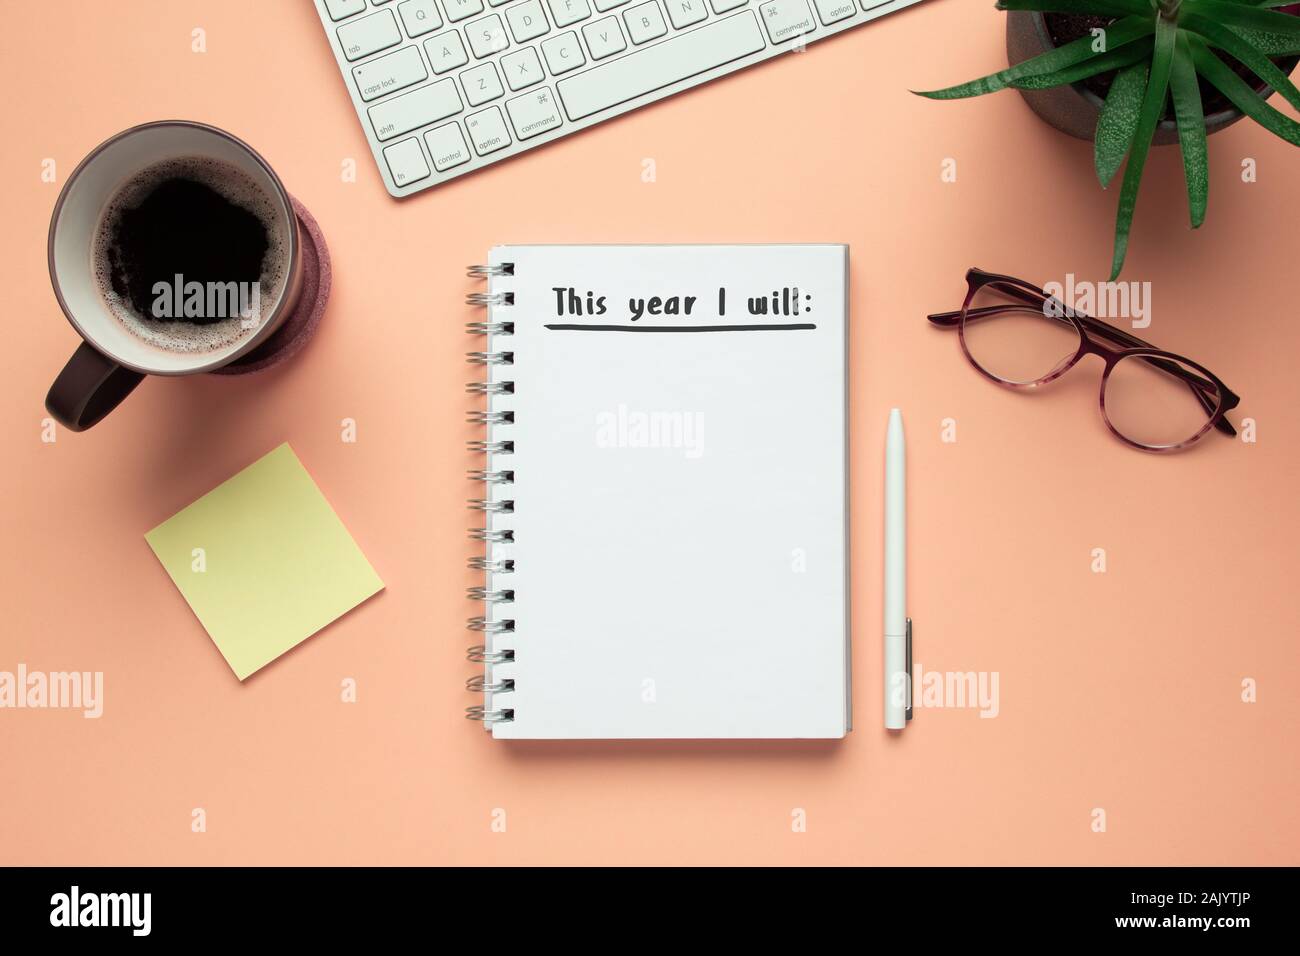 Stock photo de nouvel an 2020 portable avec liste des résolutions et des objets sur fond rose Banque D'Images